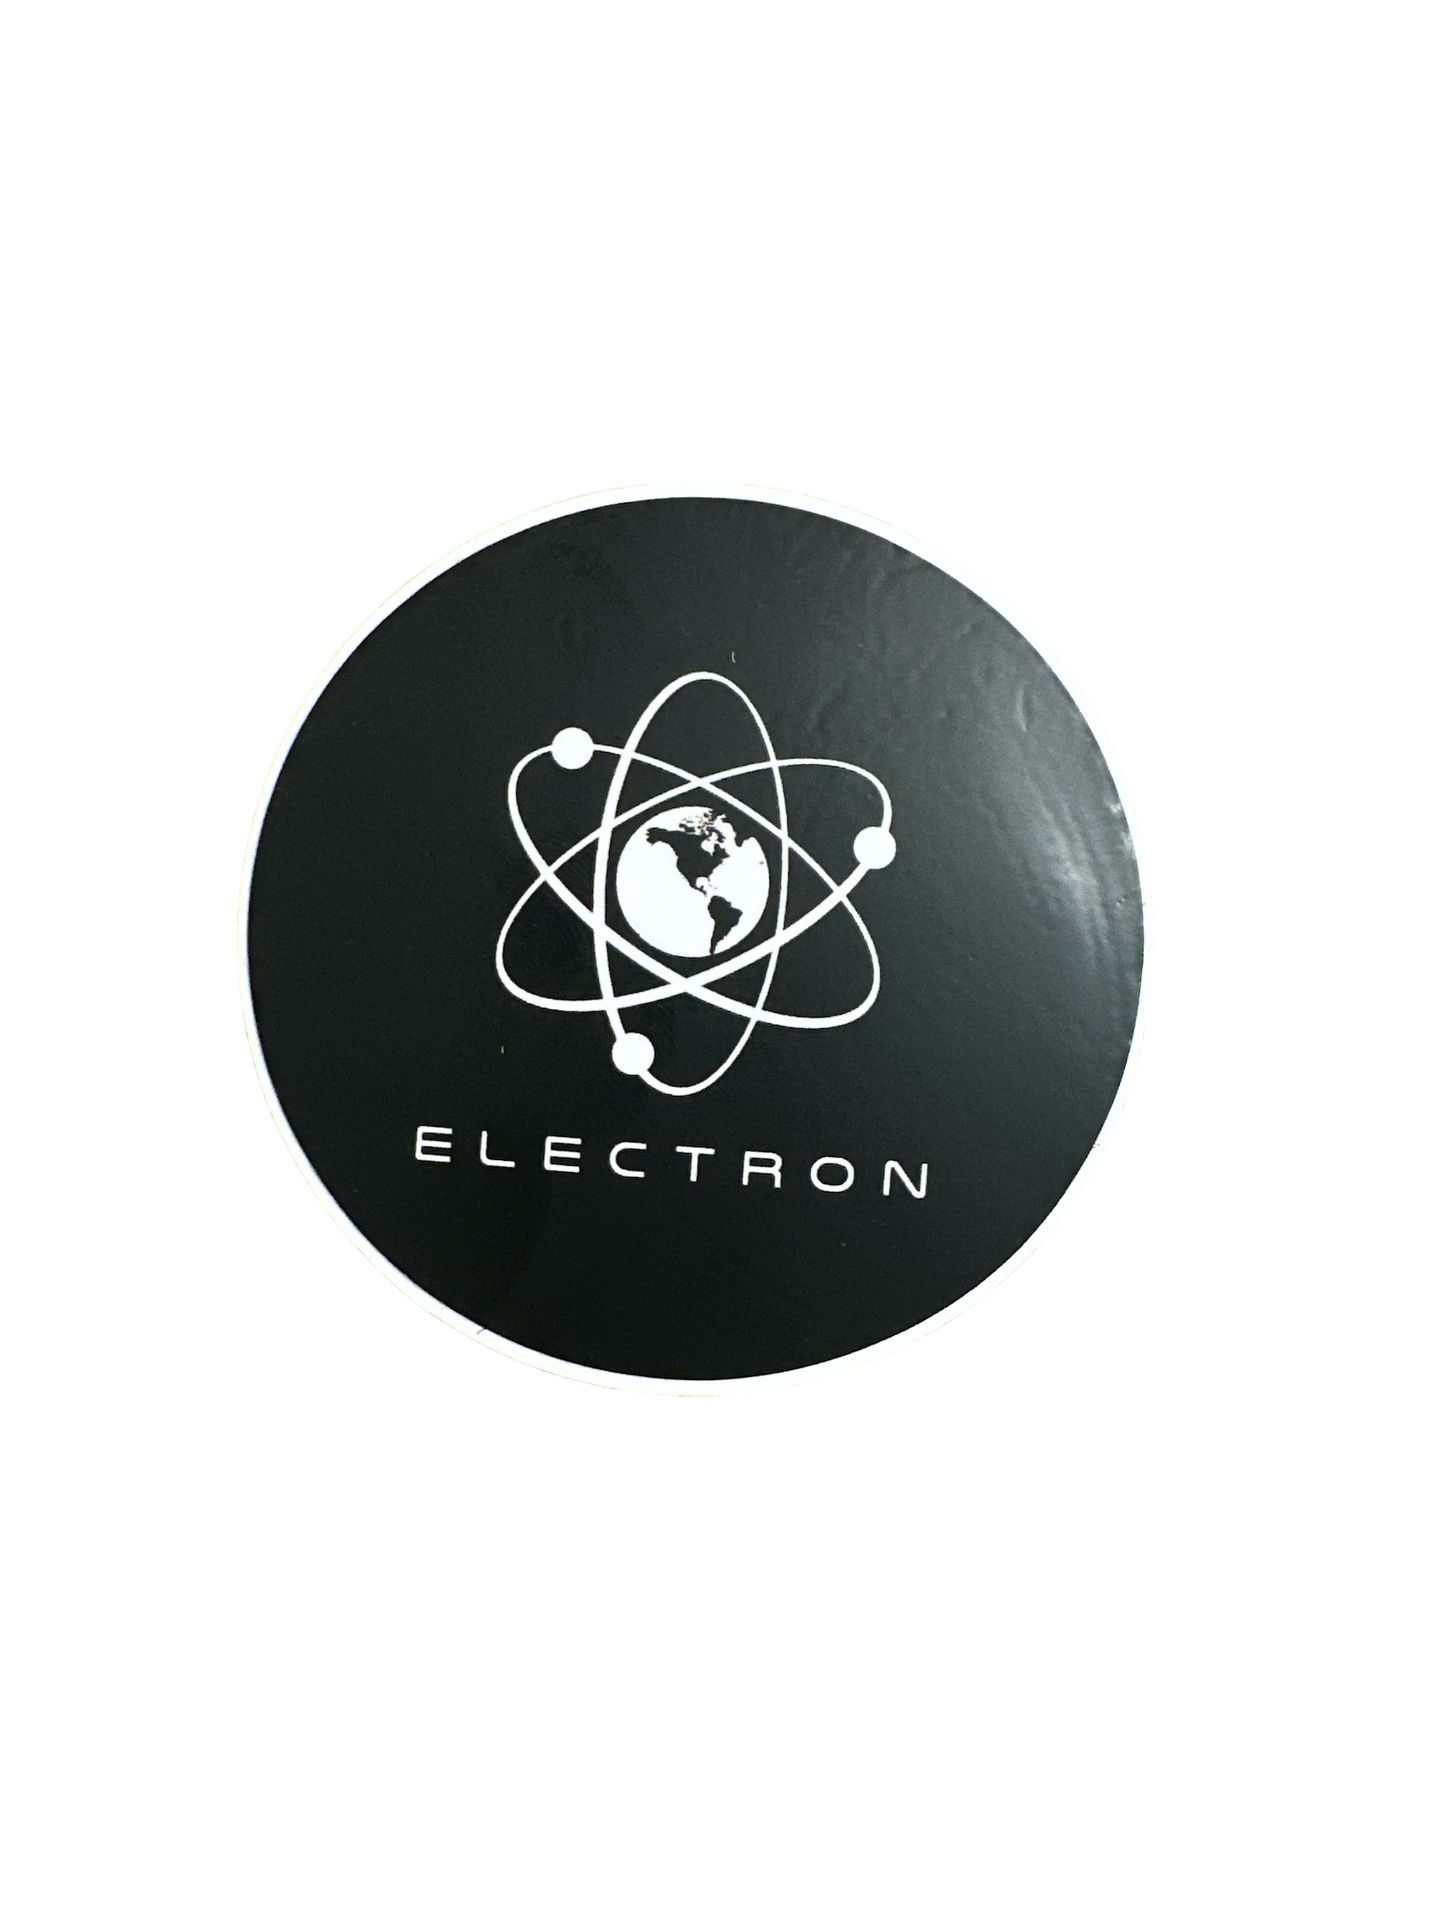 NASA electron stickers (2) 3” diameter   T-180